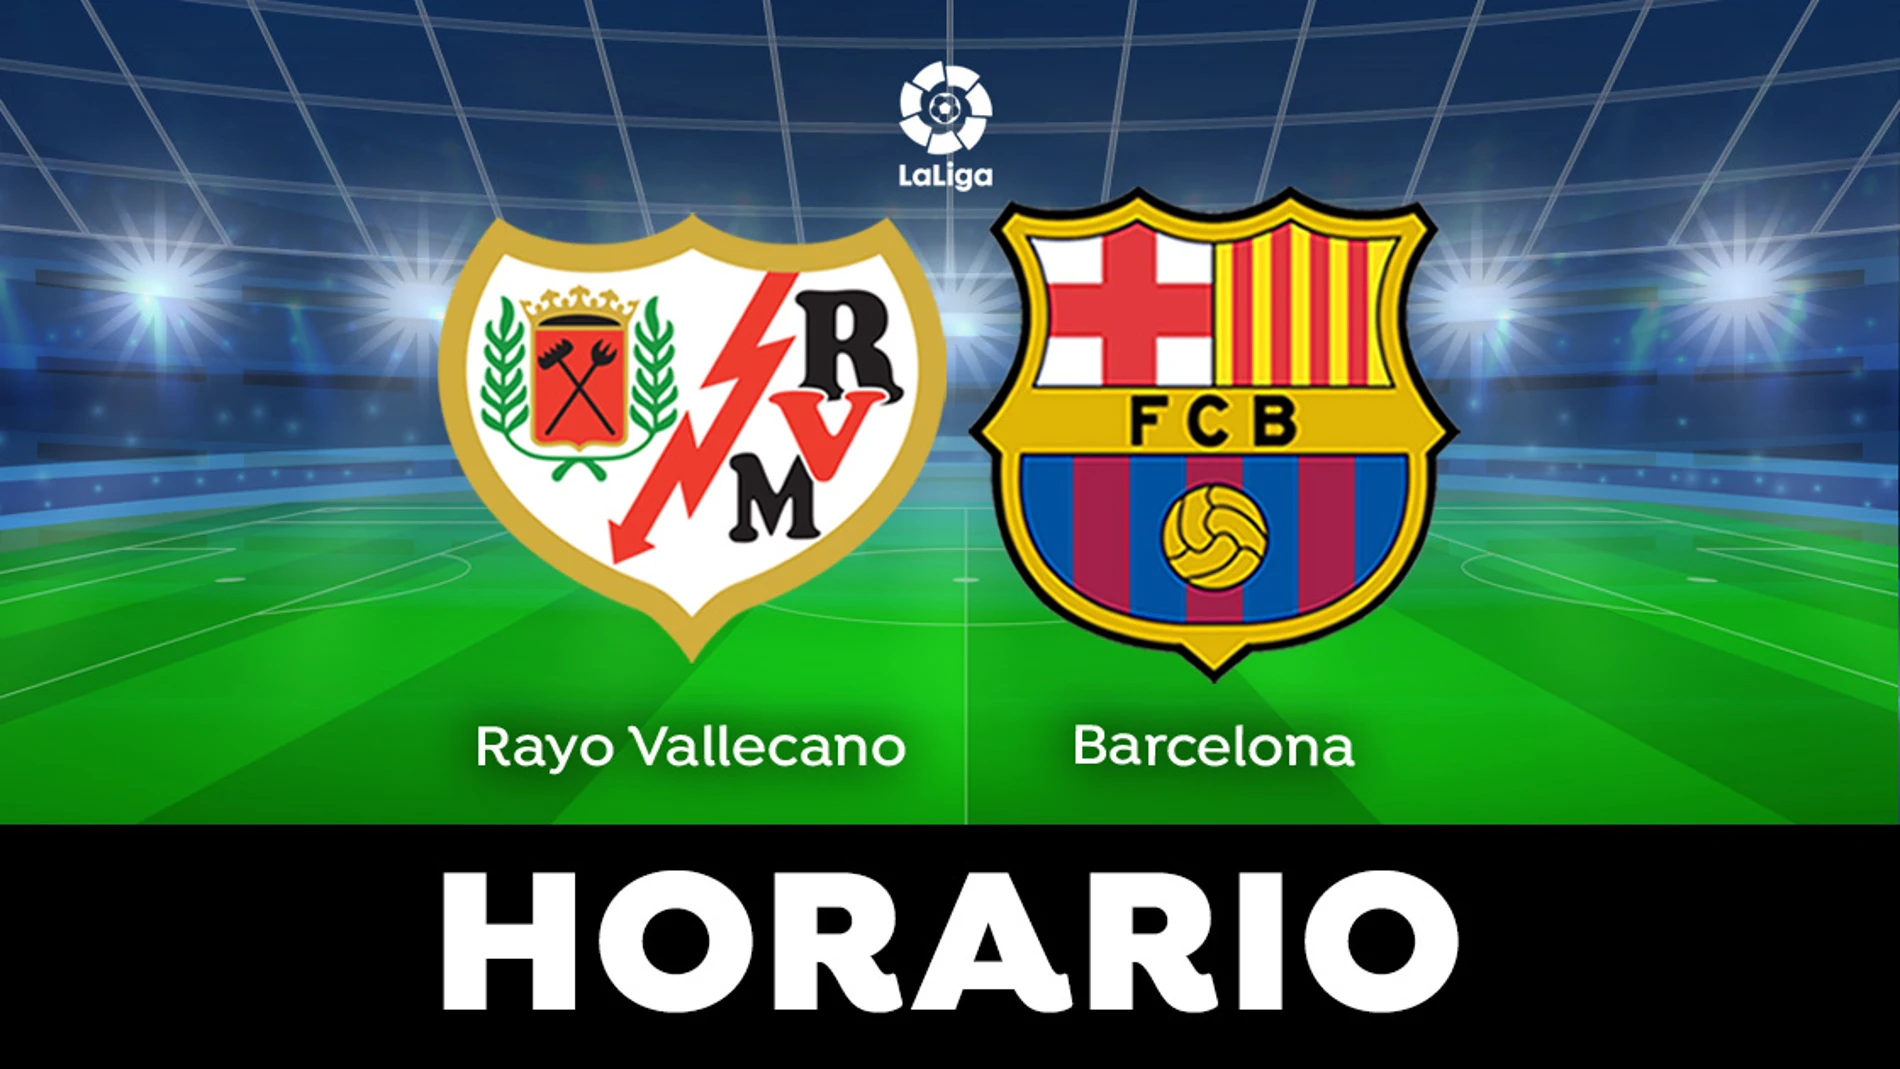 Rayo Vallecano - Barcelona: Horario del partido de la jornada 31 de LaLiga